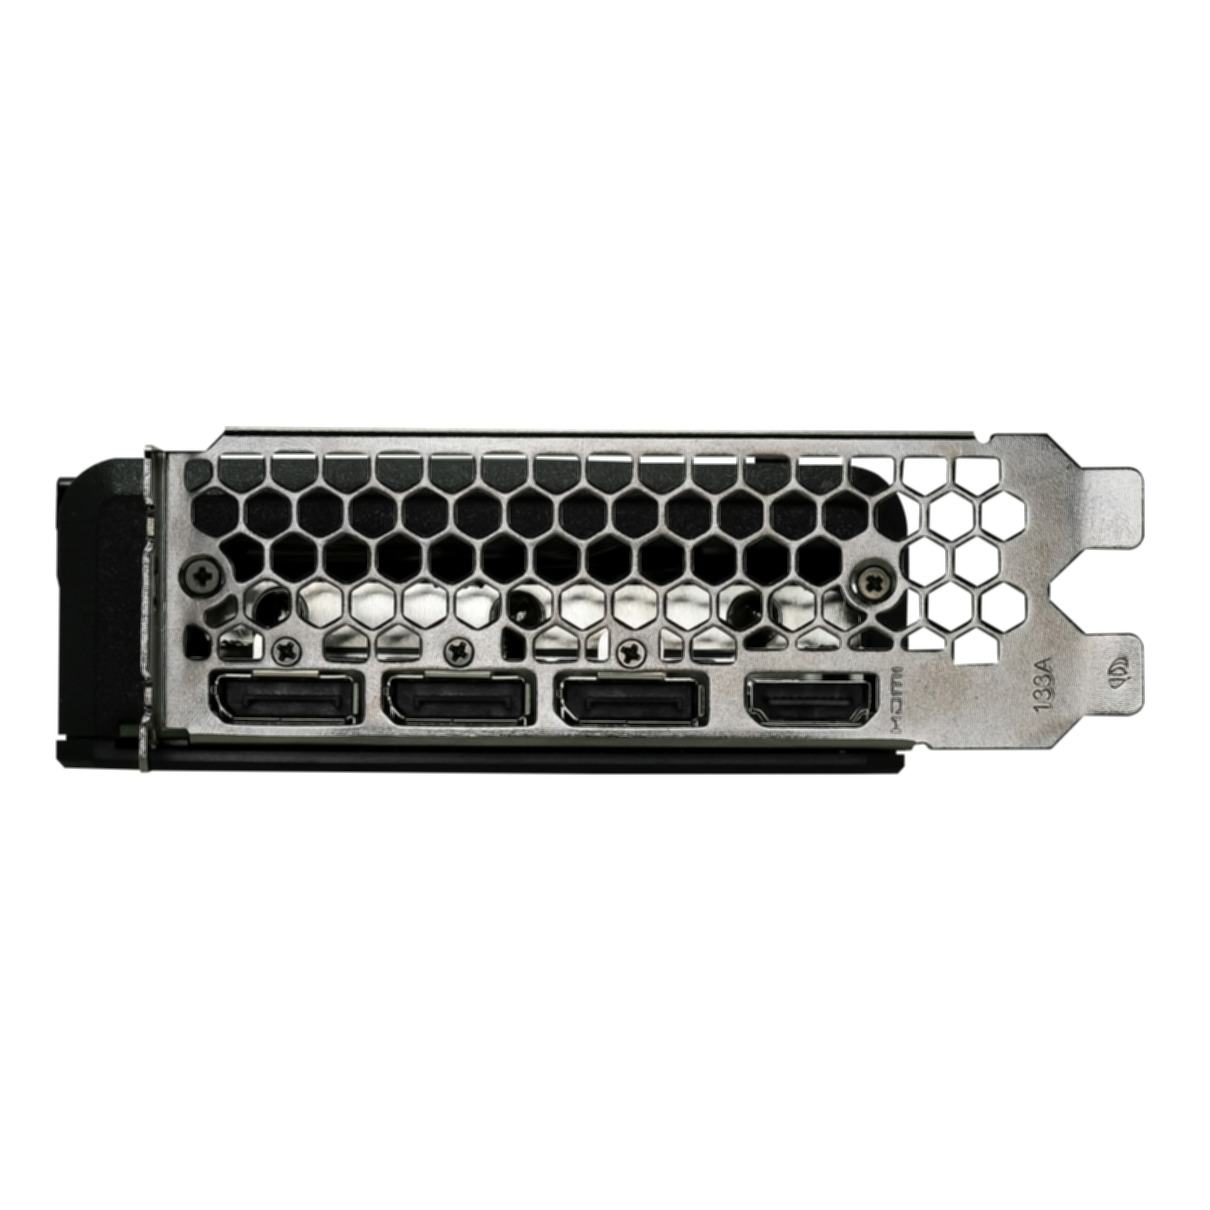 RTX PALIT (NVIDIA, GeForce V1 Dual Grafikkarte) 3060 Ti